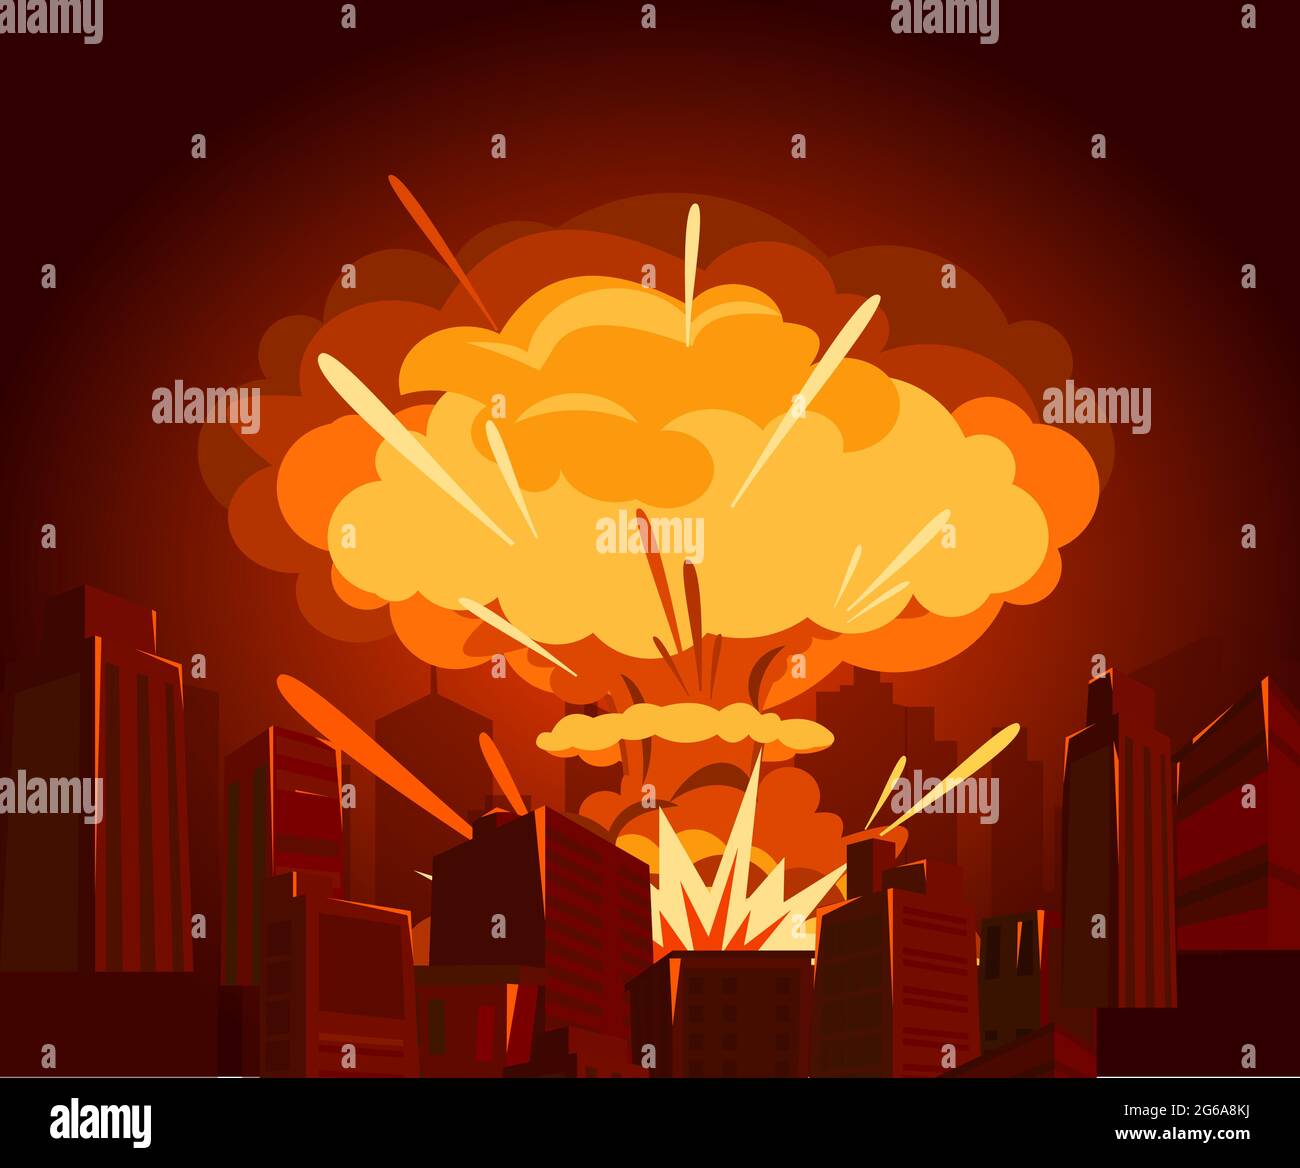 Vektor-Illustration der Atombombe in der Stadt. Krieg und Ende der Welt Konzept im flachen Stil. Gefahren der Kernenergie. Stock Vektor